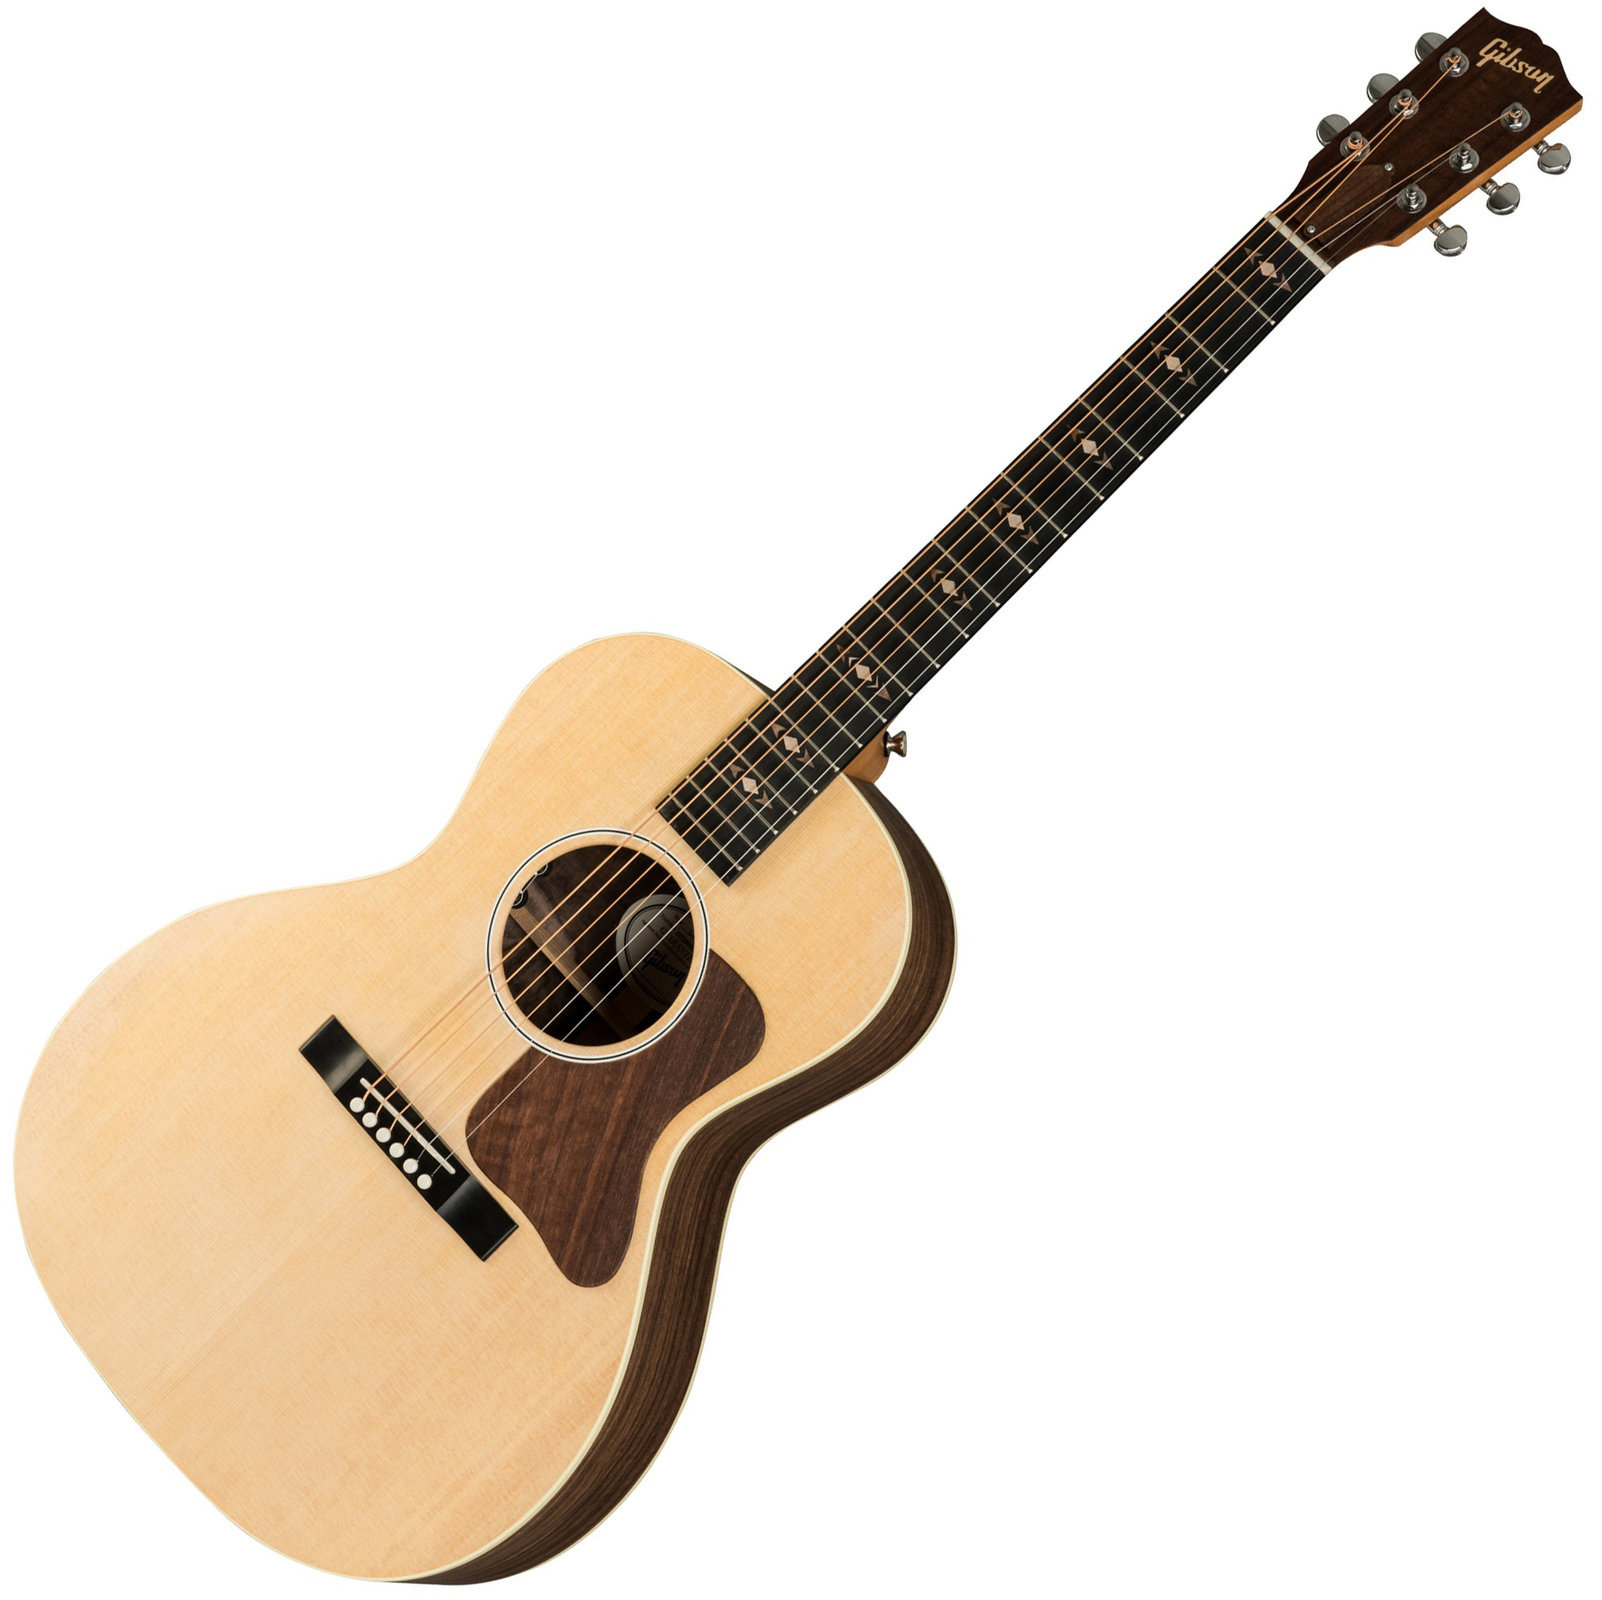 Ηλεκτροακουστική Κιθάρα Gibson L-00 Sustainable 2019 Antique Natural